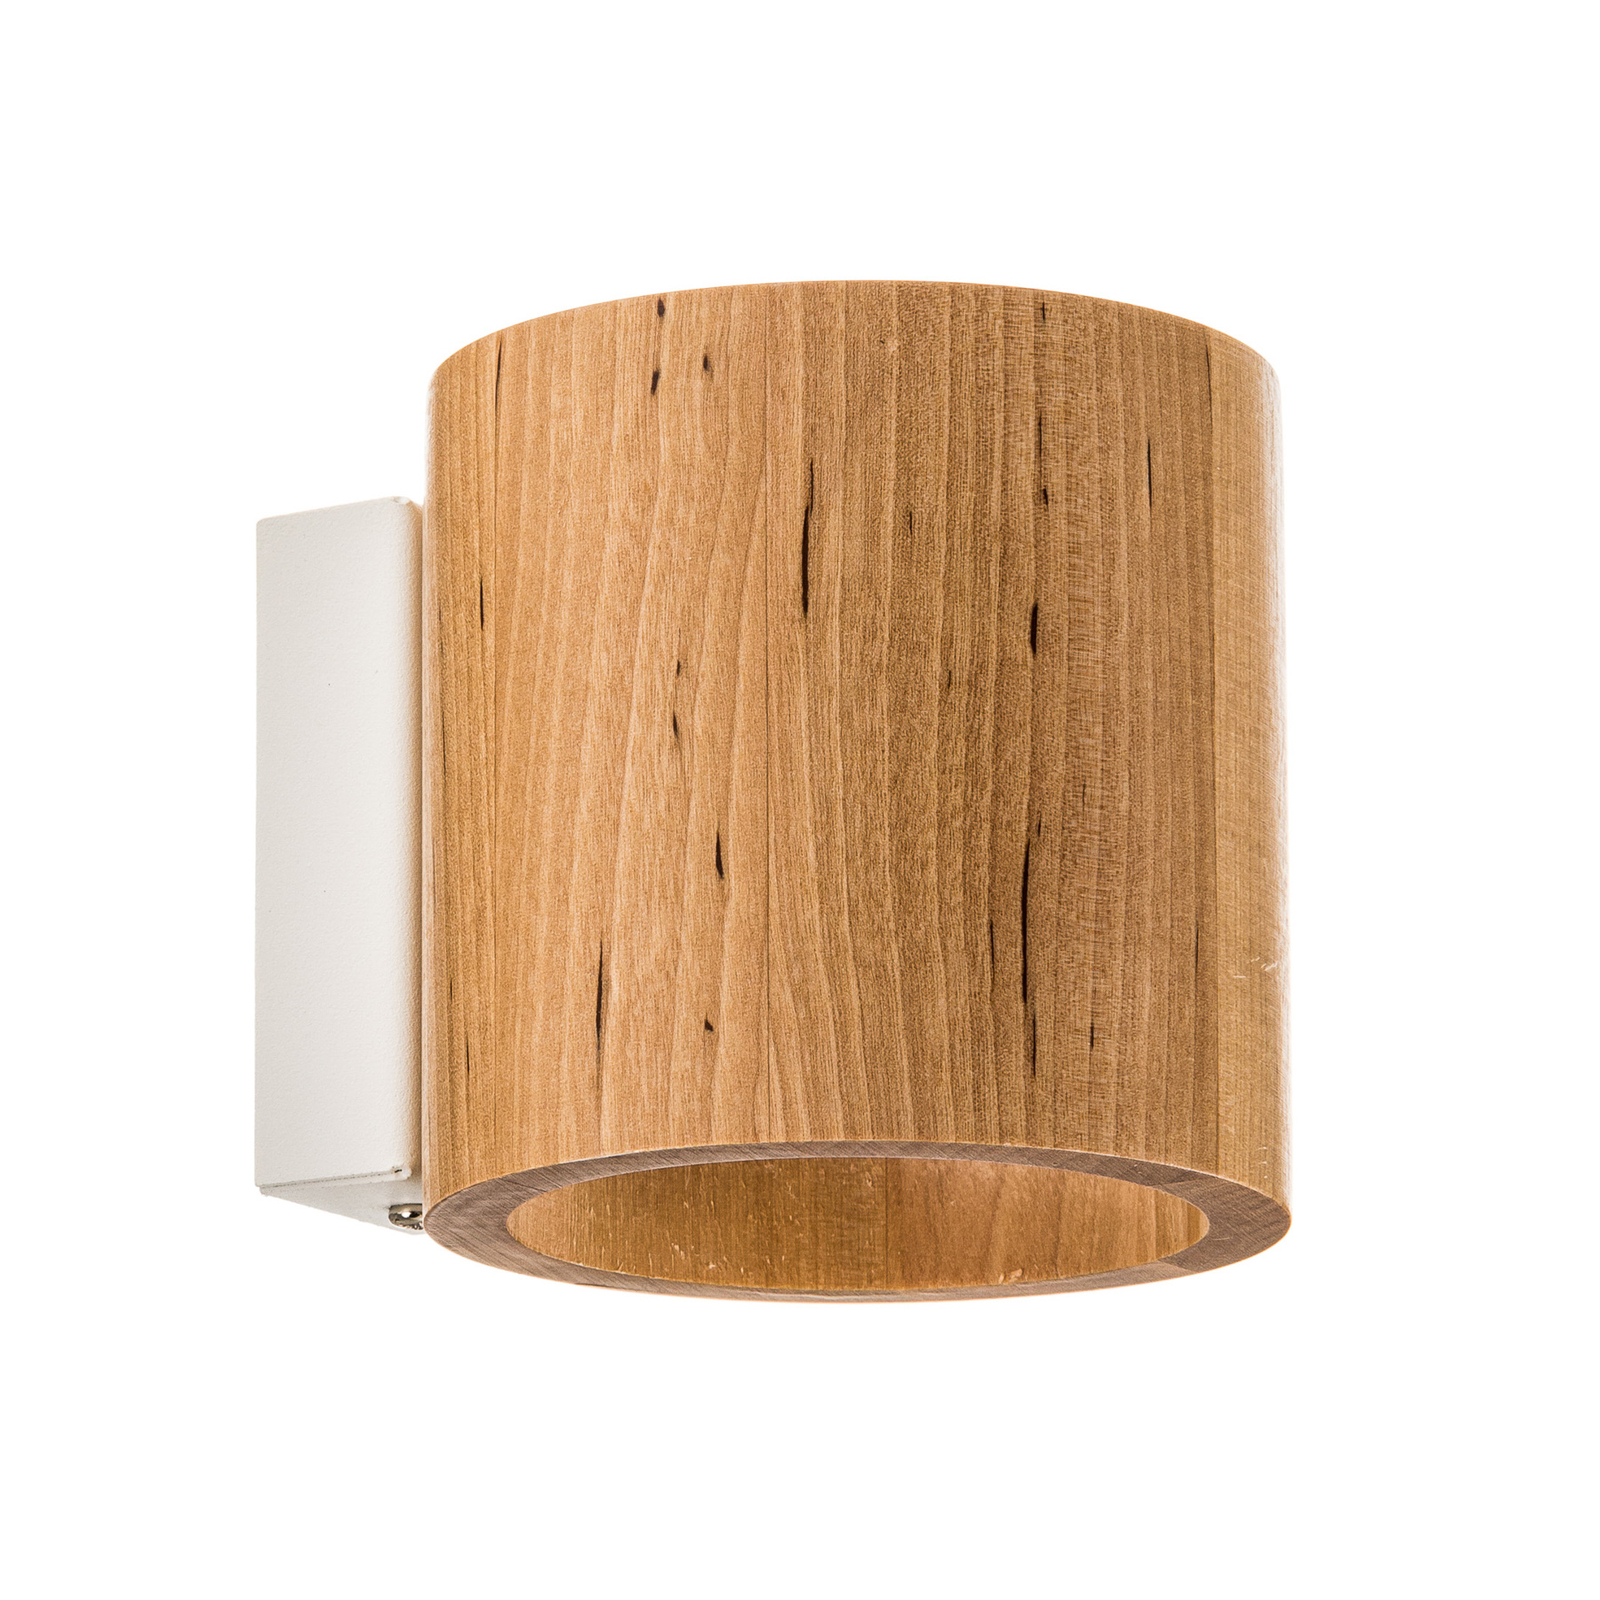 Ara wall light as a wooden cylinder